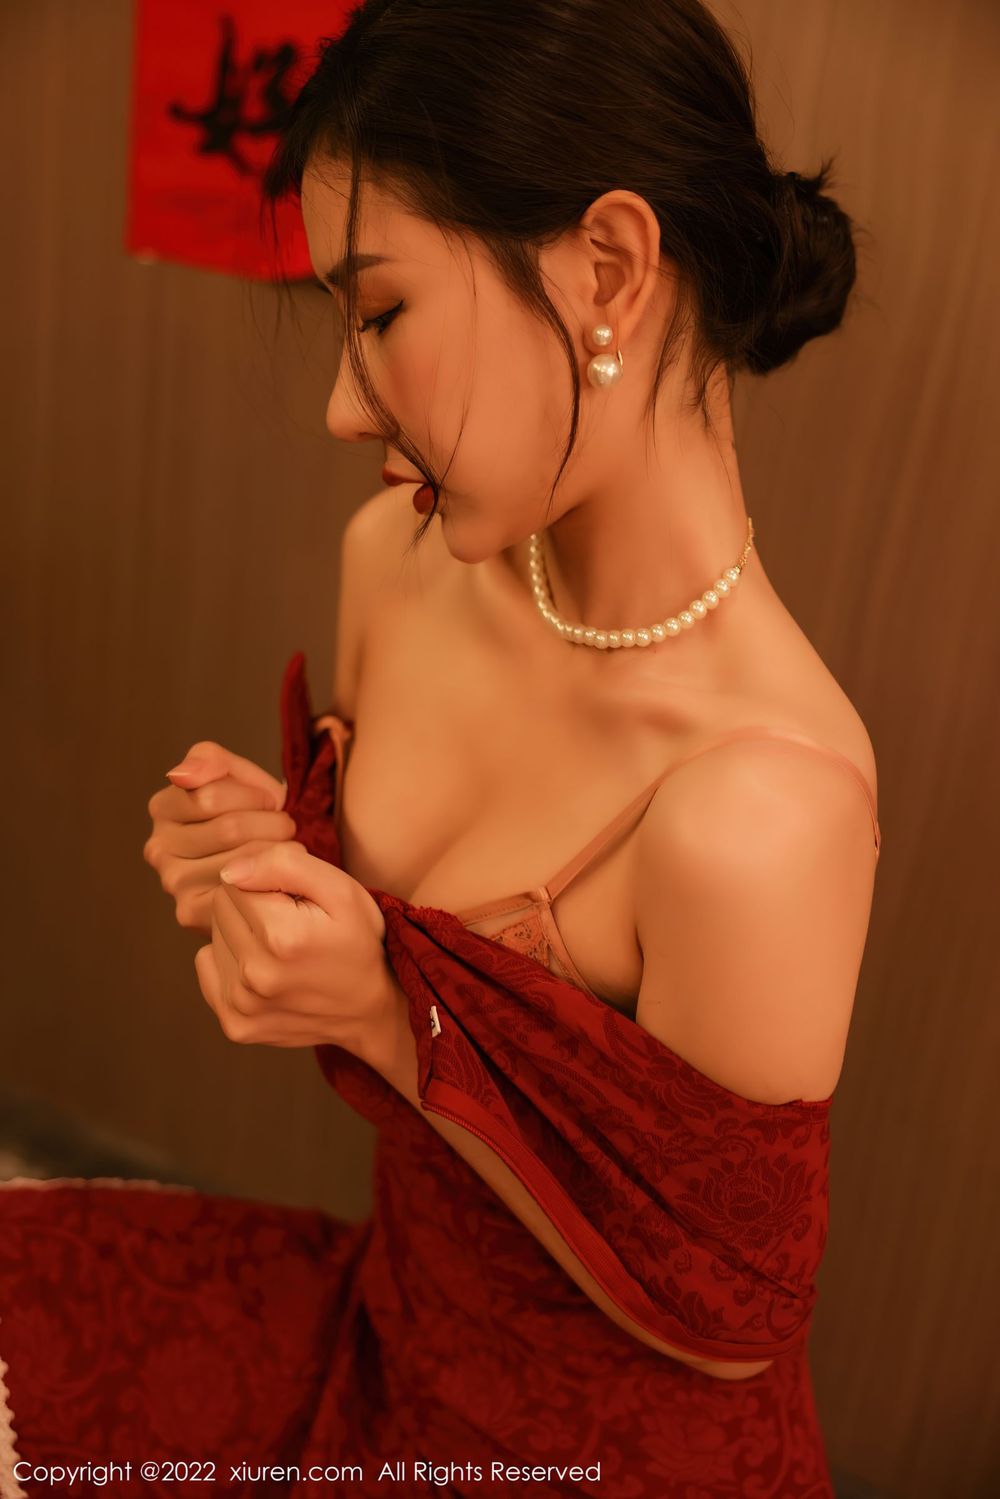 美女模特尹甜甜红色喜庆旗袍熟女气息新年主题写真